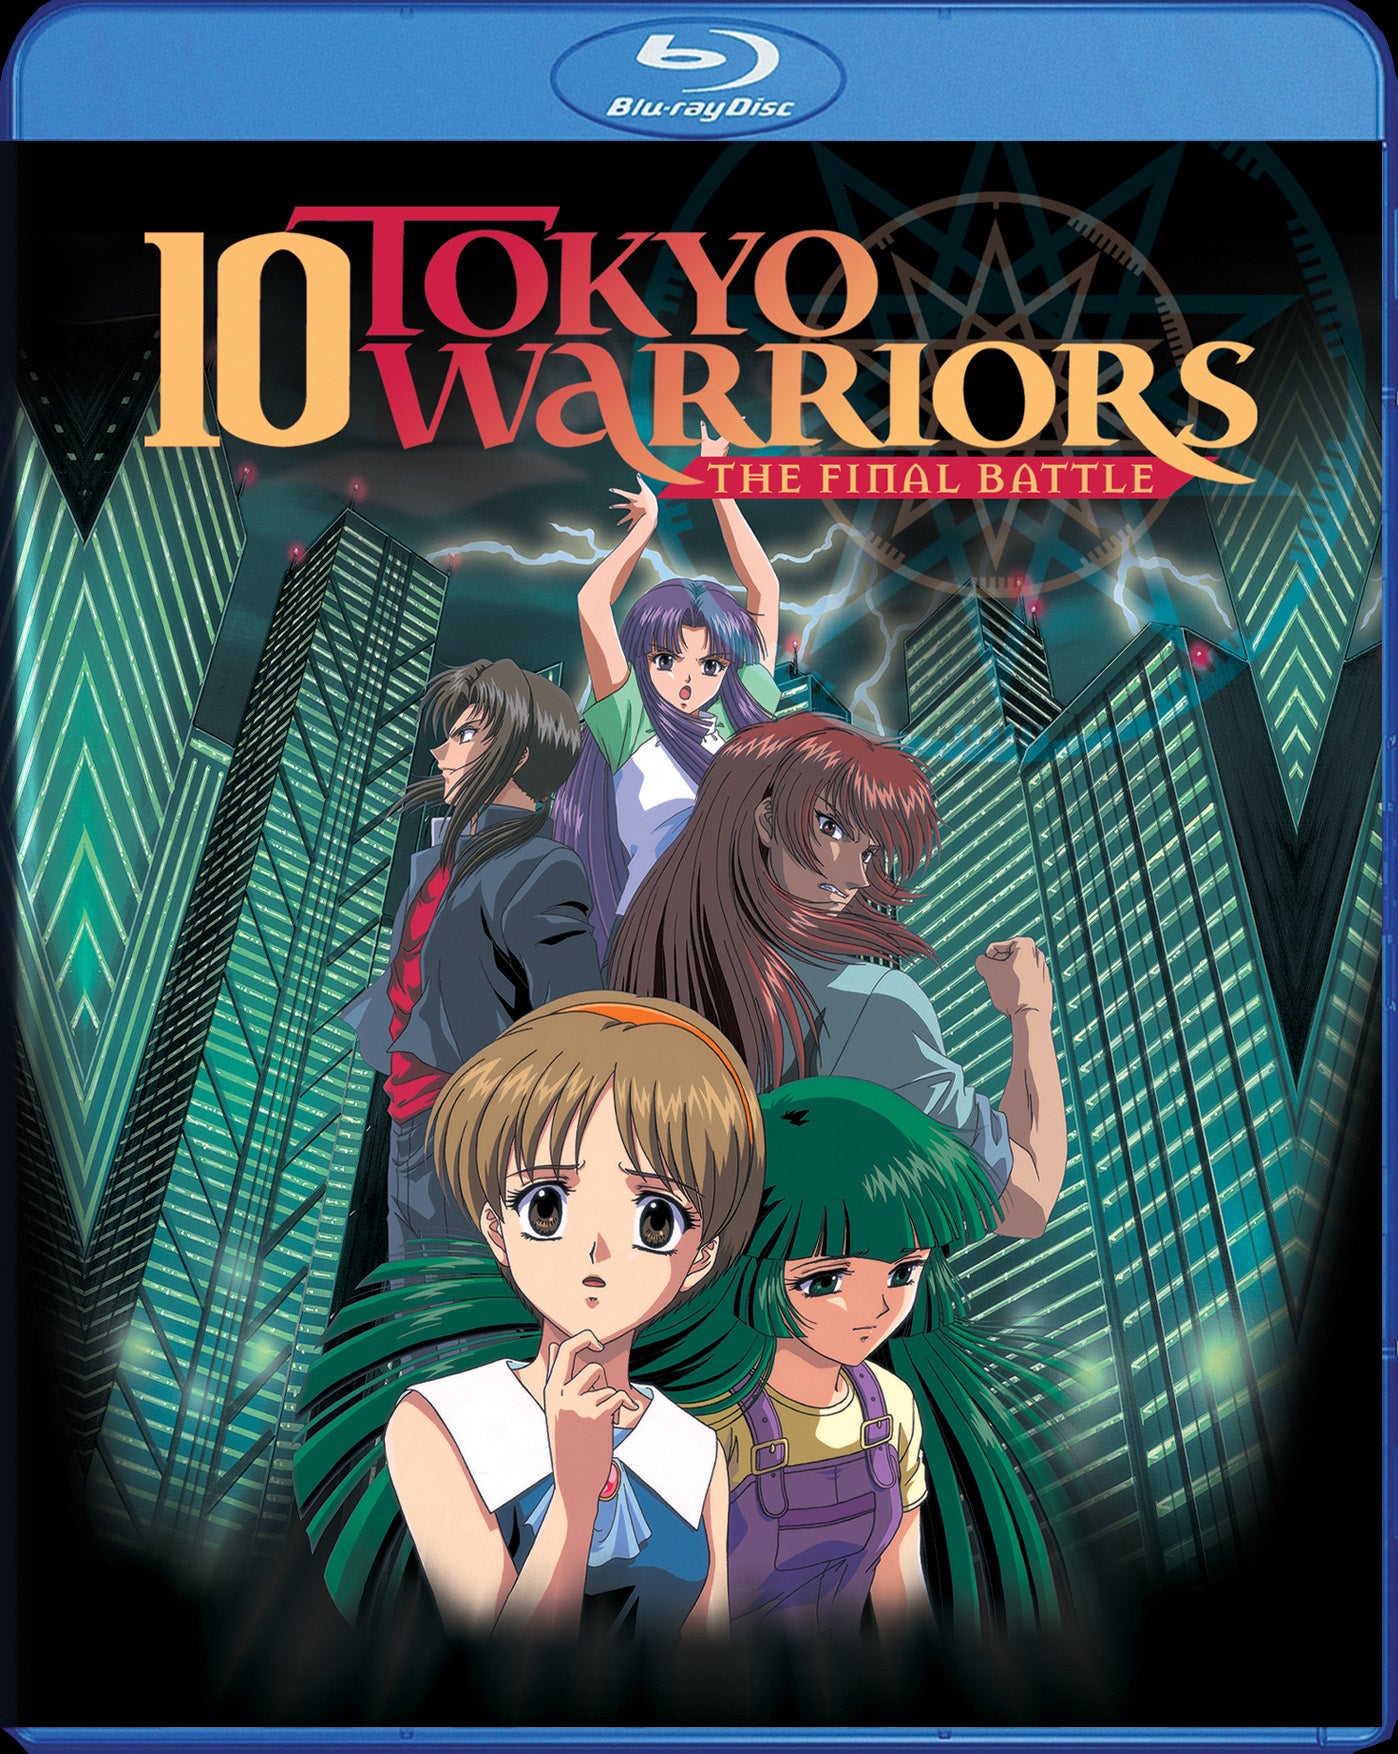 10 Tokyo Warriors - Final Battle [BD]